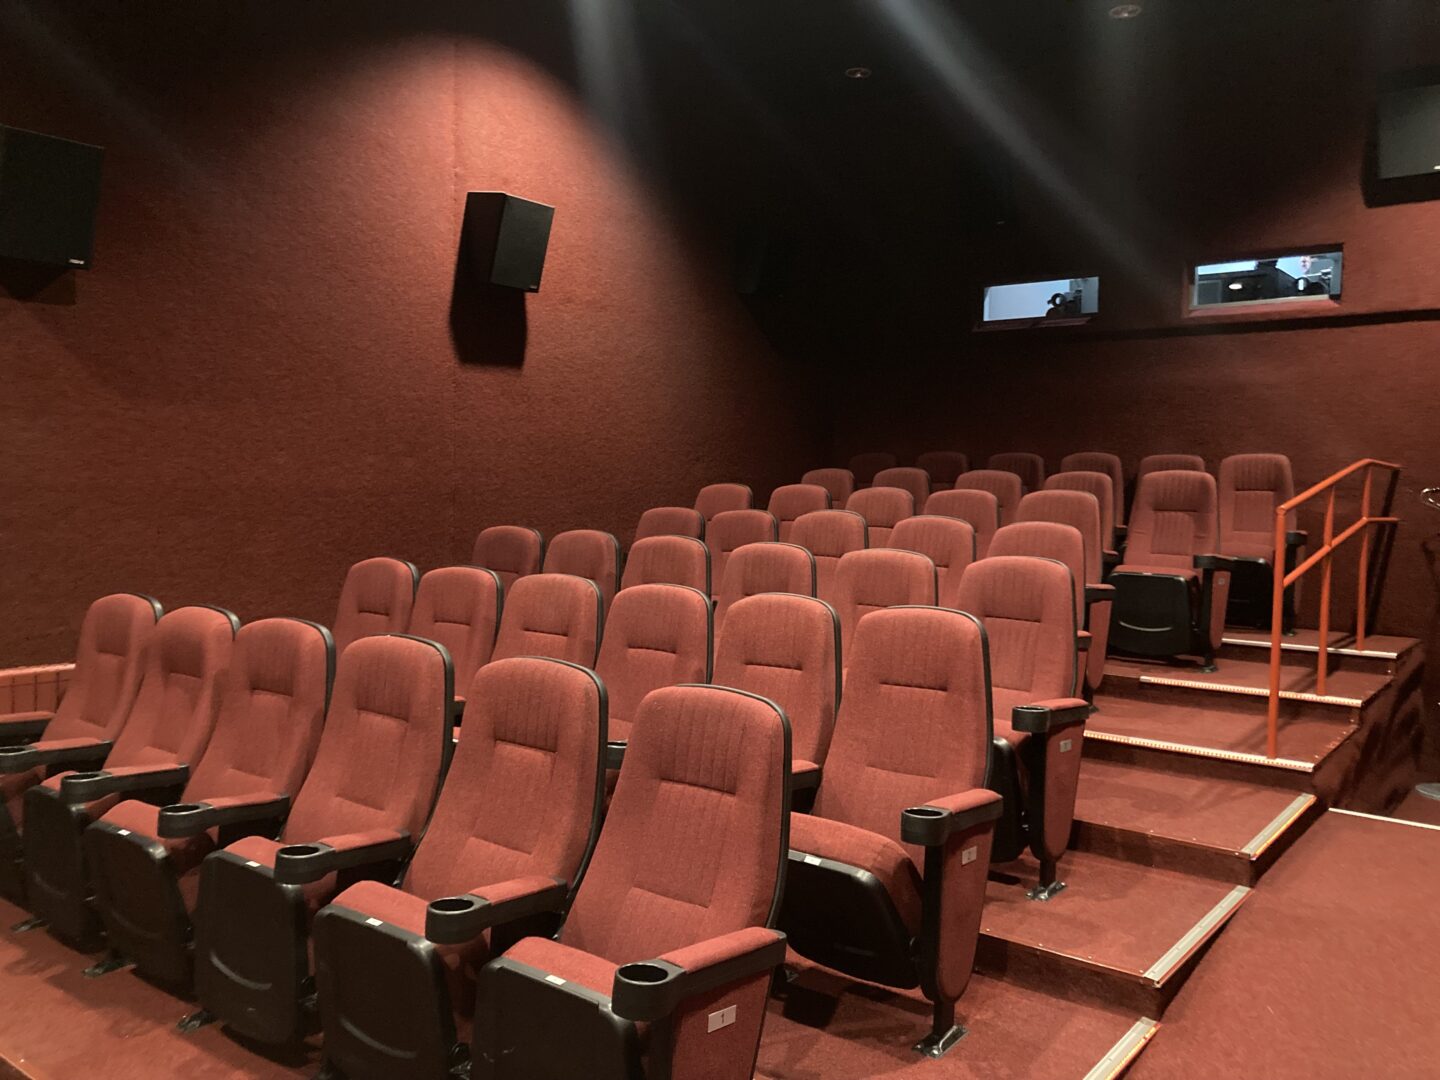 Mažoji kino teatro salė - sunkiai atpažįstama